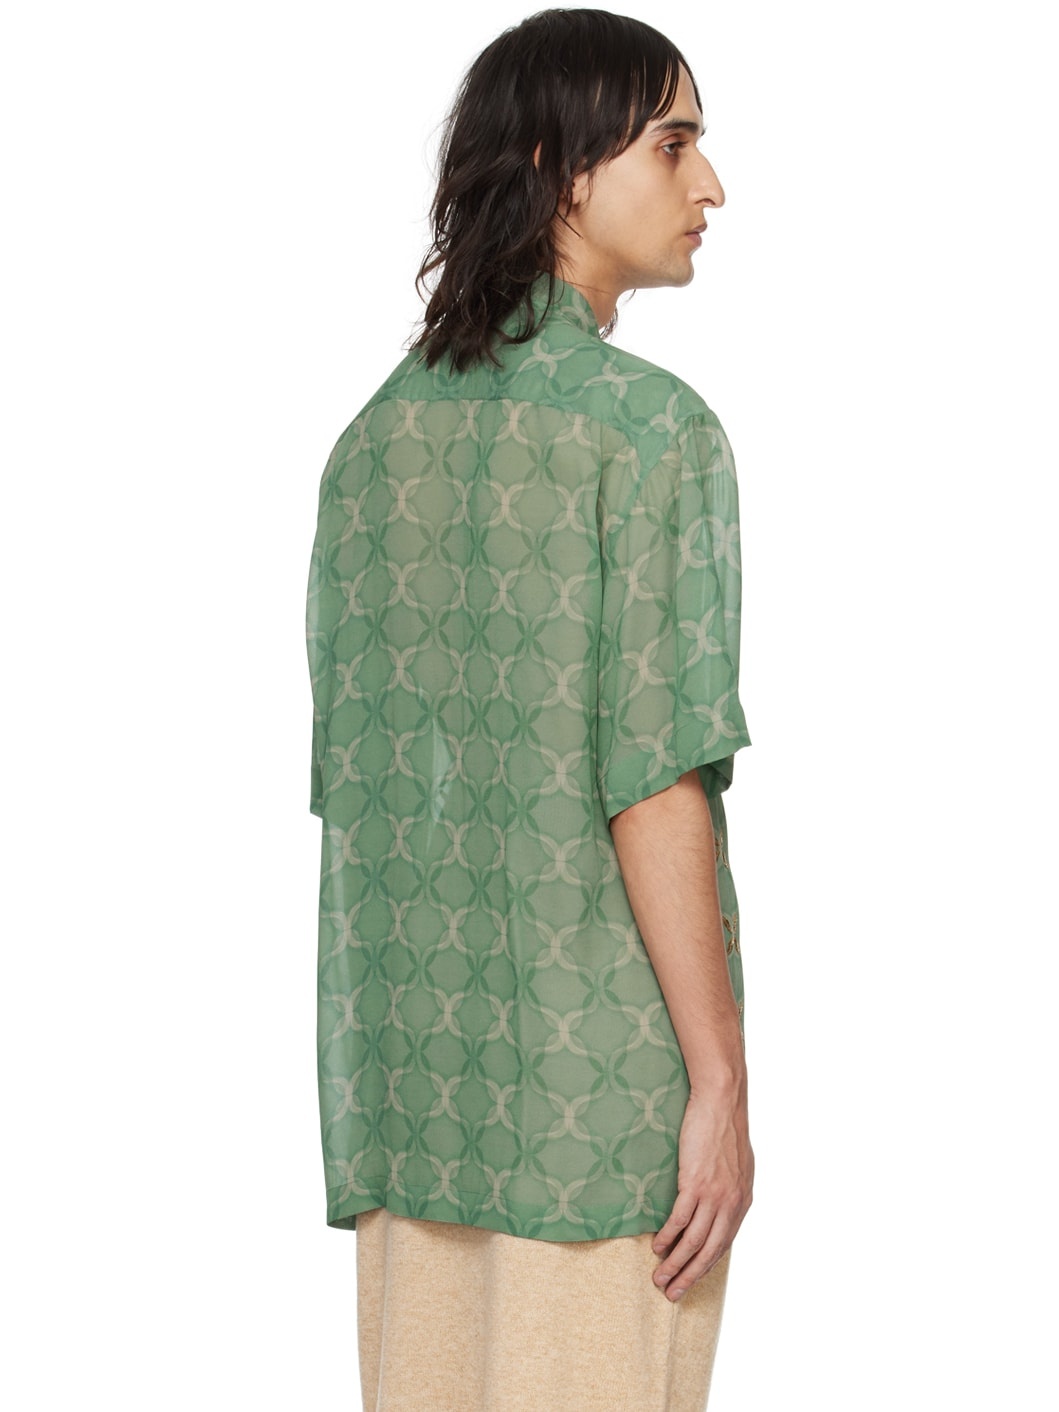 Green Sequinned Shirt - 3